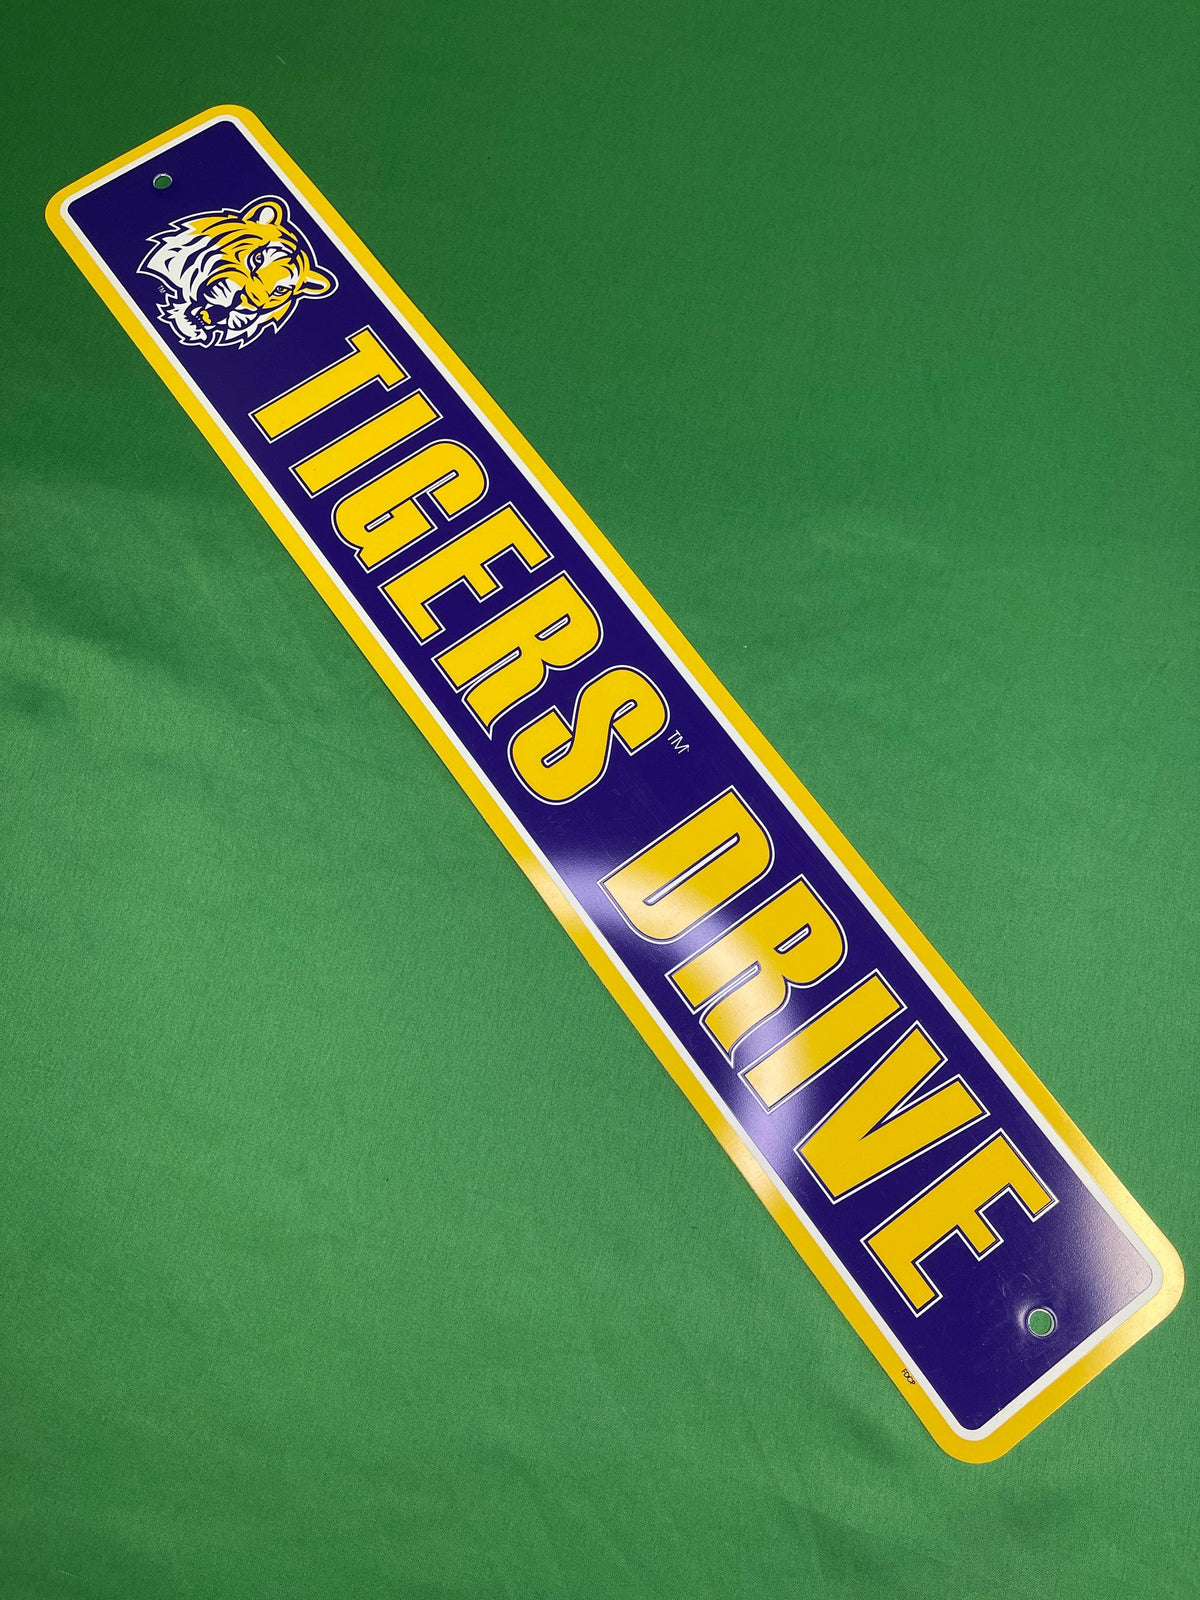 Louisiana State university state of football shirt - Kingteeshop